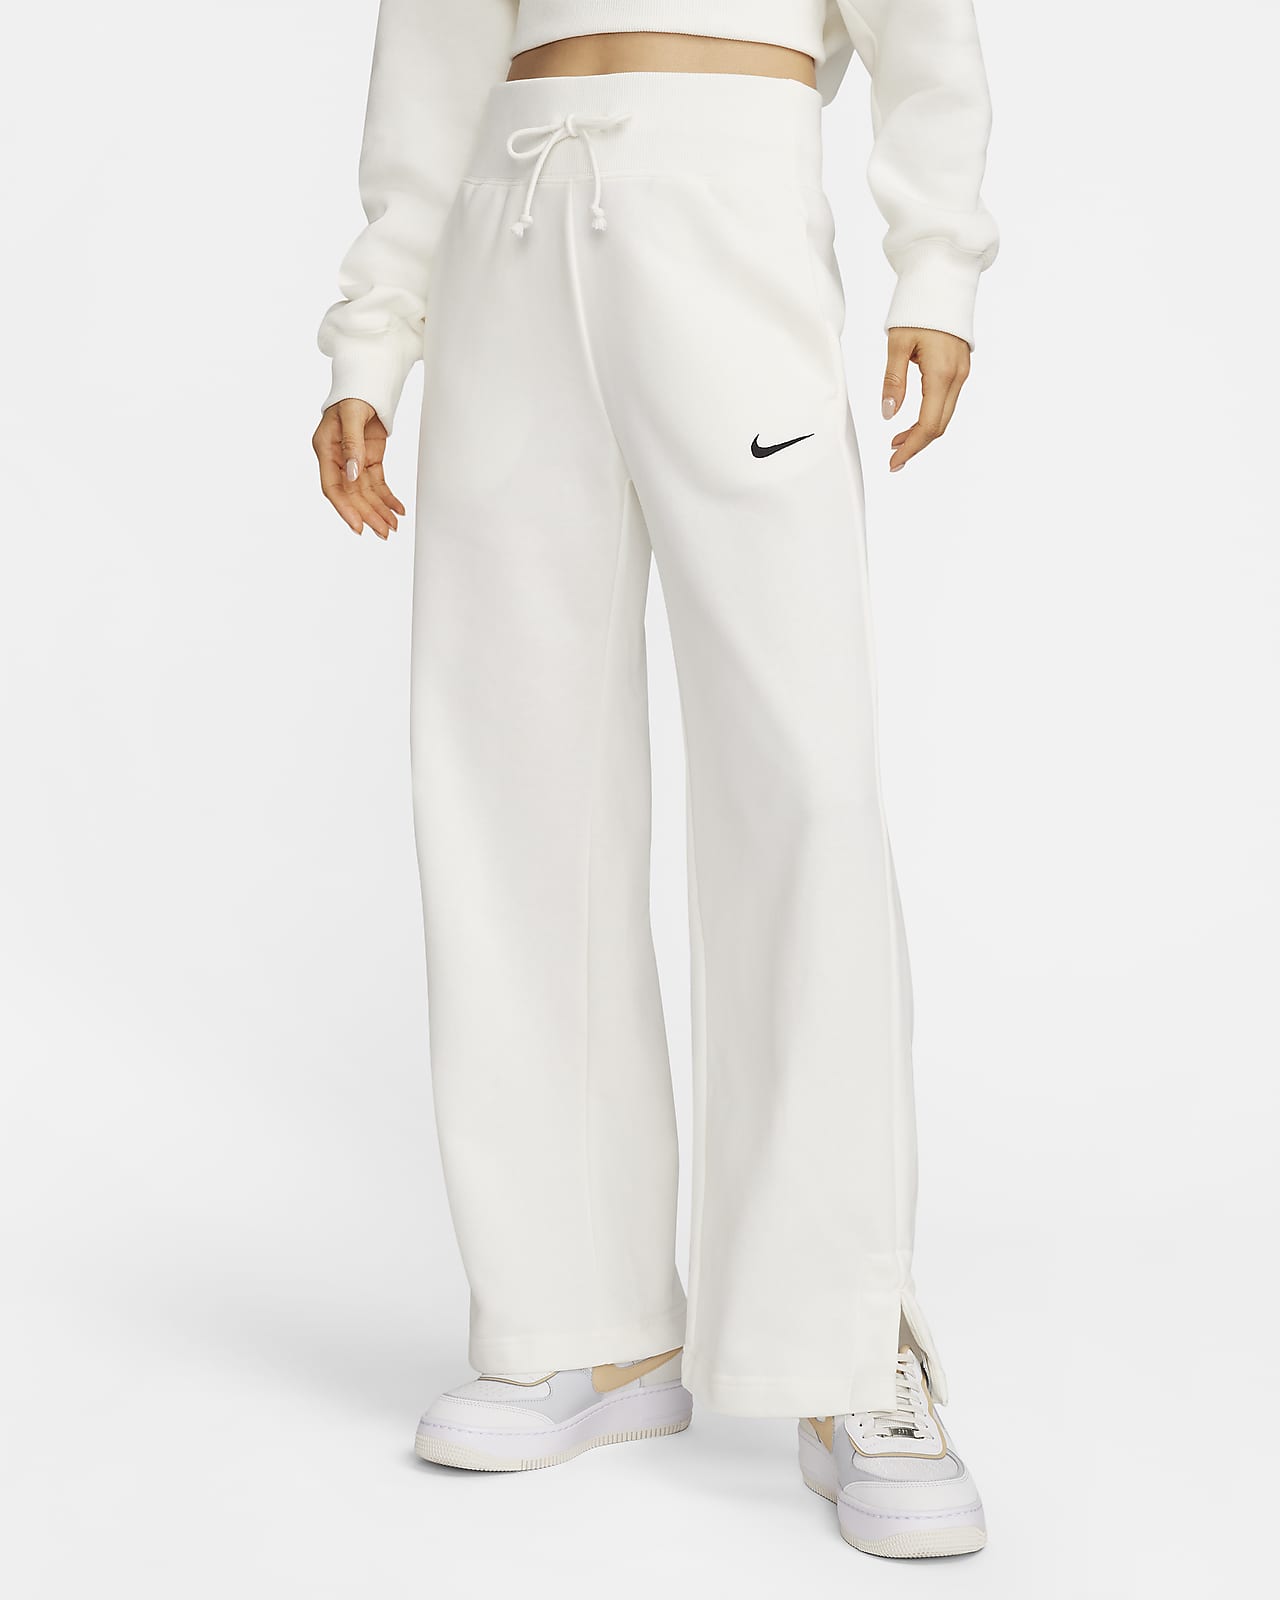 กางเกงซ้อมกีฬาผ้าเฟรนช์เทรีทรงขากว้างเอวสูงผู้หญิง Nike Sportswear Phoenix Fleece